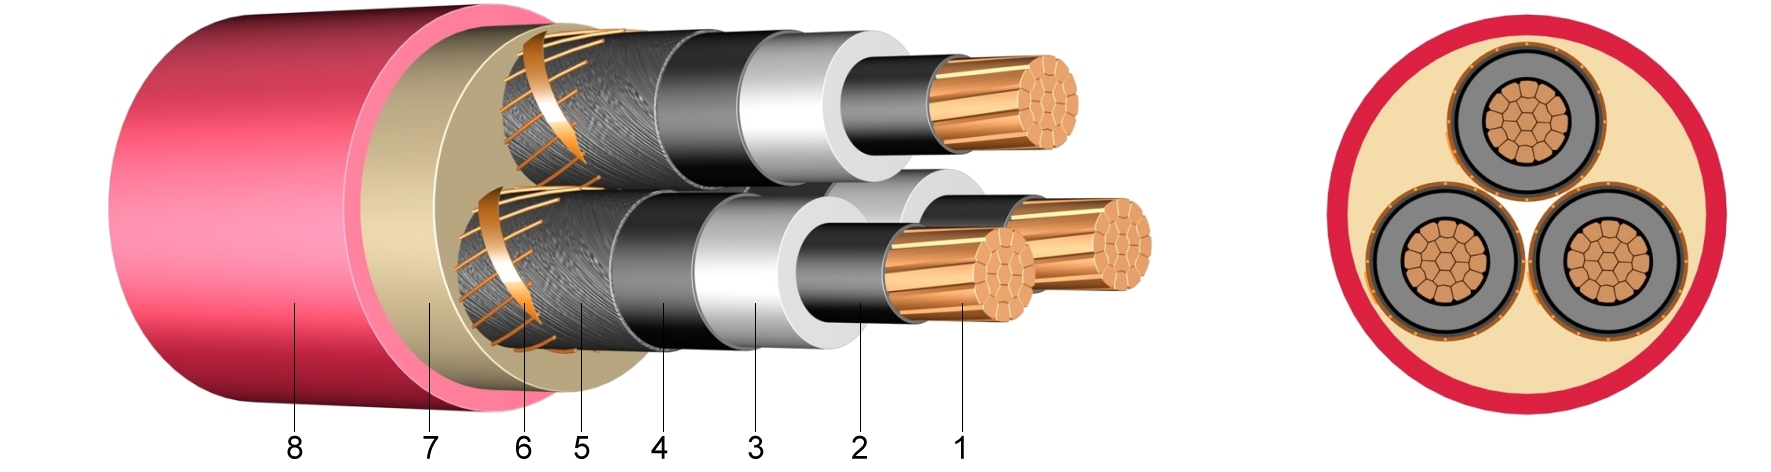 Кабель 3 6 кв. XLPE изоляция медный проводник 3-жильный силовой кабель 3x35 мм2. Сшитый полиэтилен 10 кв. Кабель cu XLPE PVC 185sq. Сшитый полиэтилен кабель 10 кв.